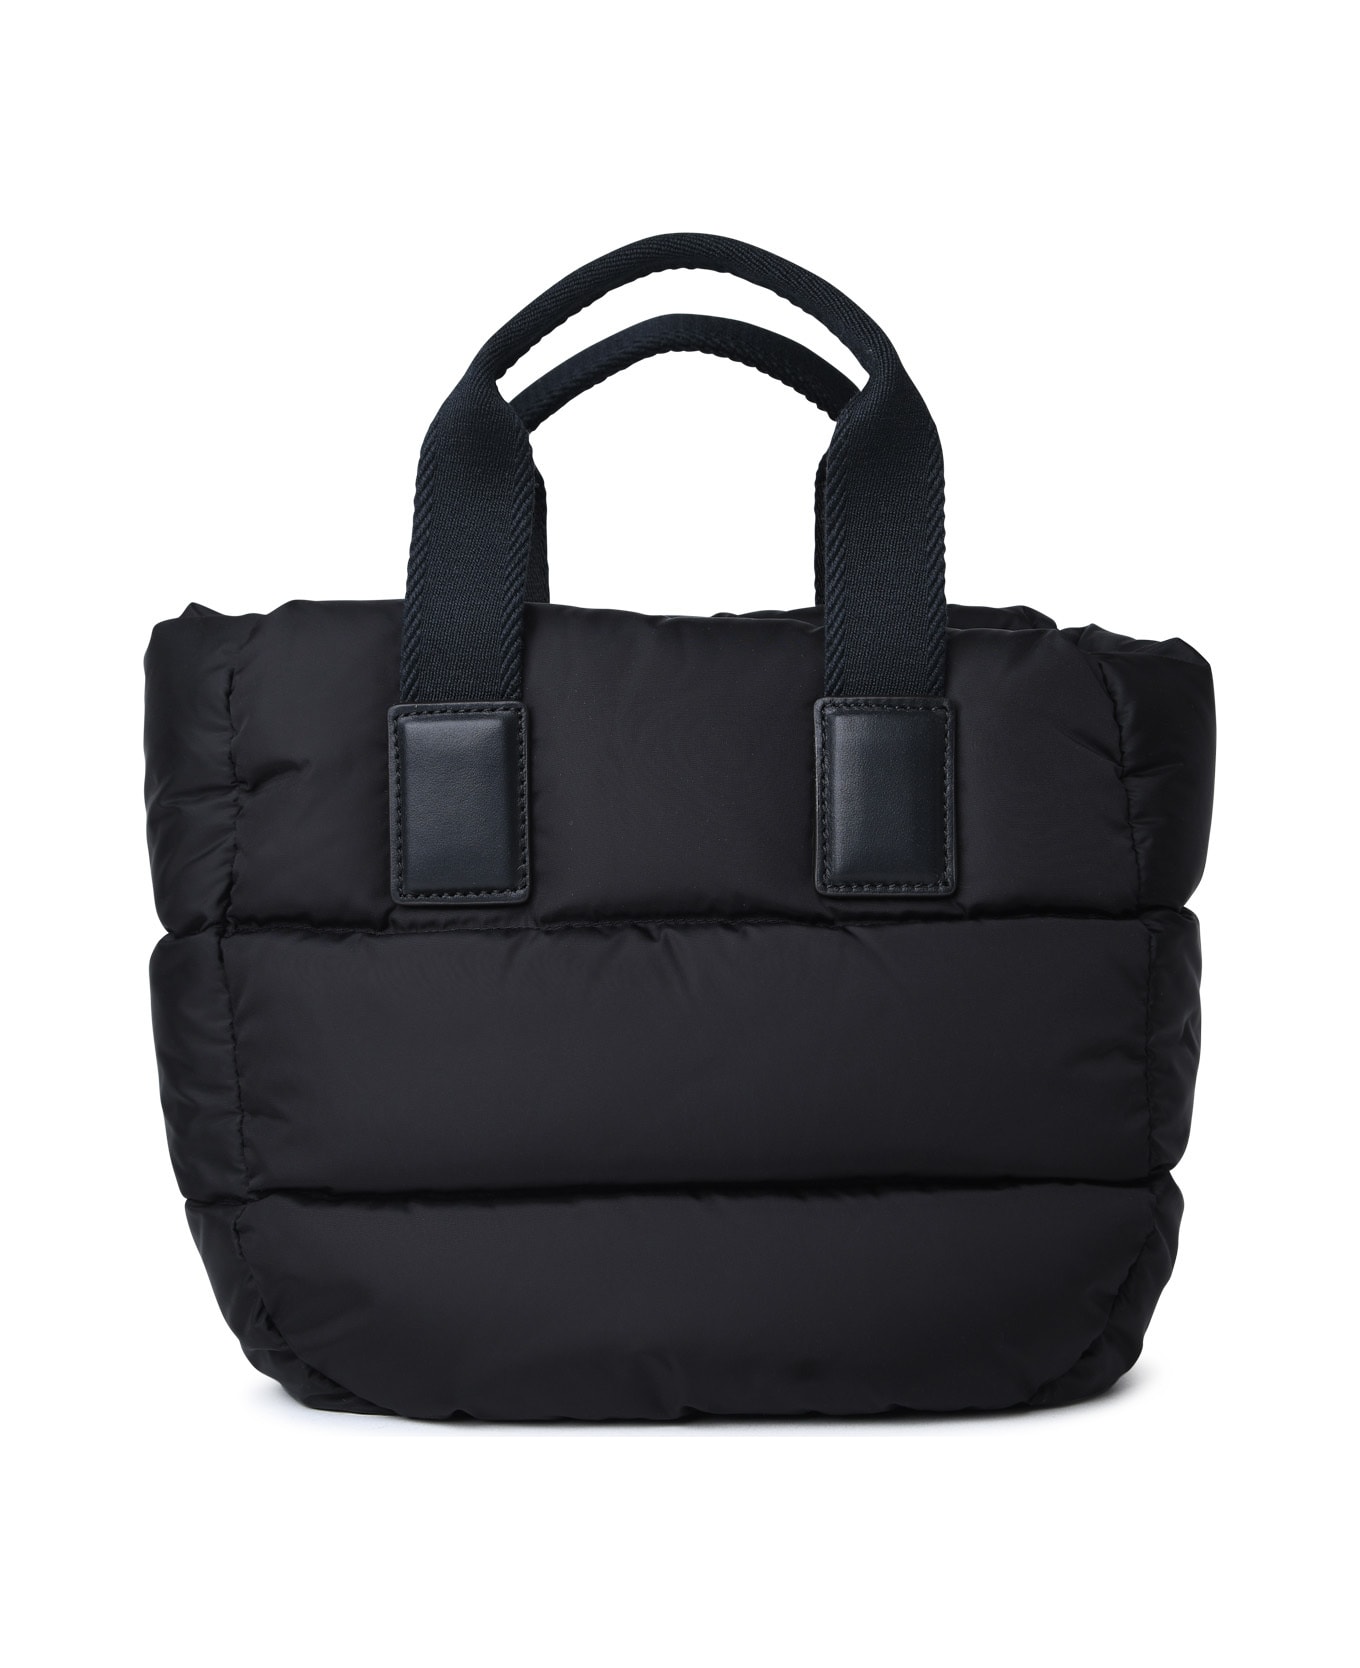 Moncler 'caradoc' Mini Bag In Black Nylon - Black